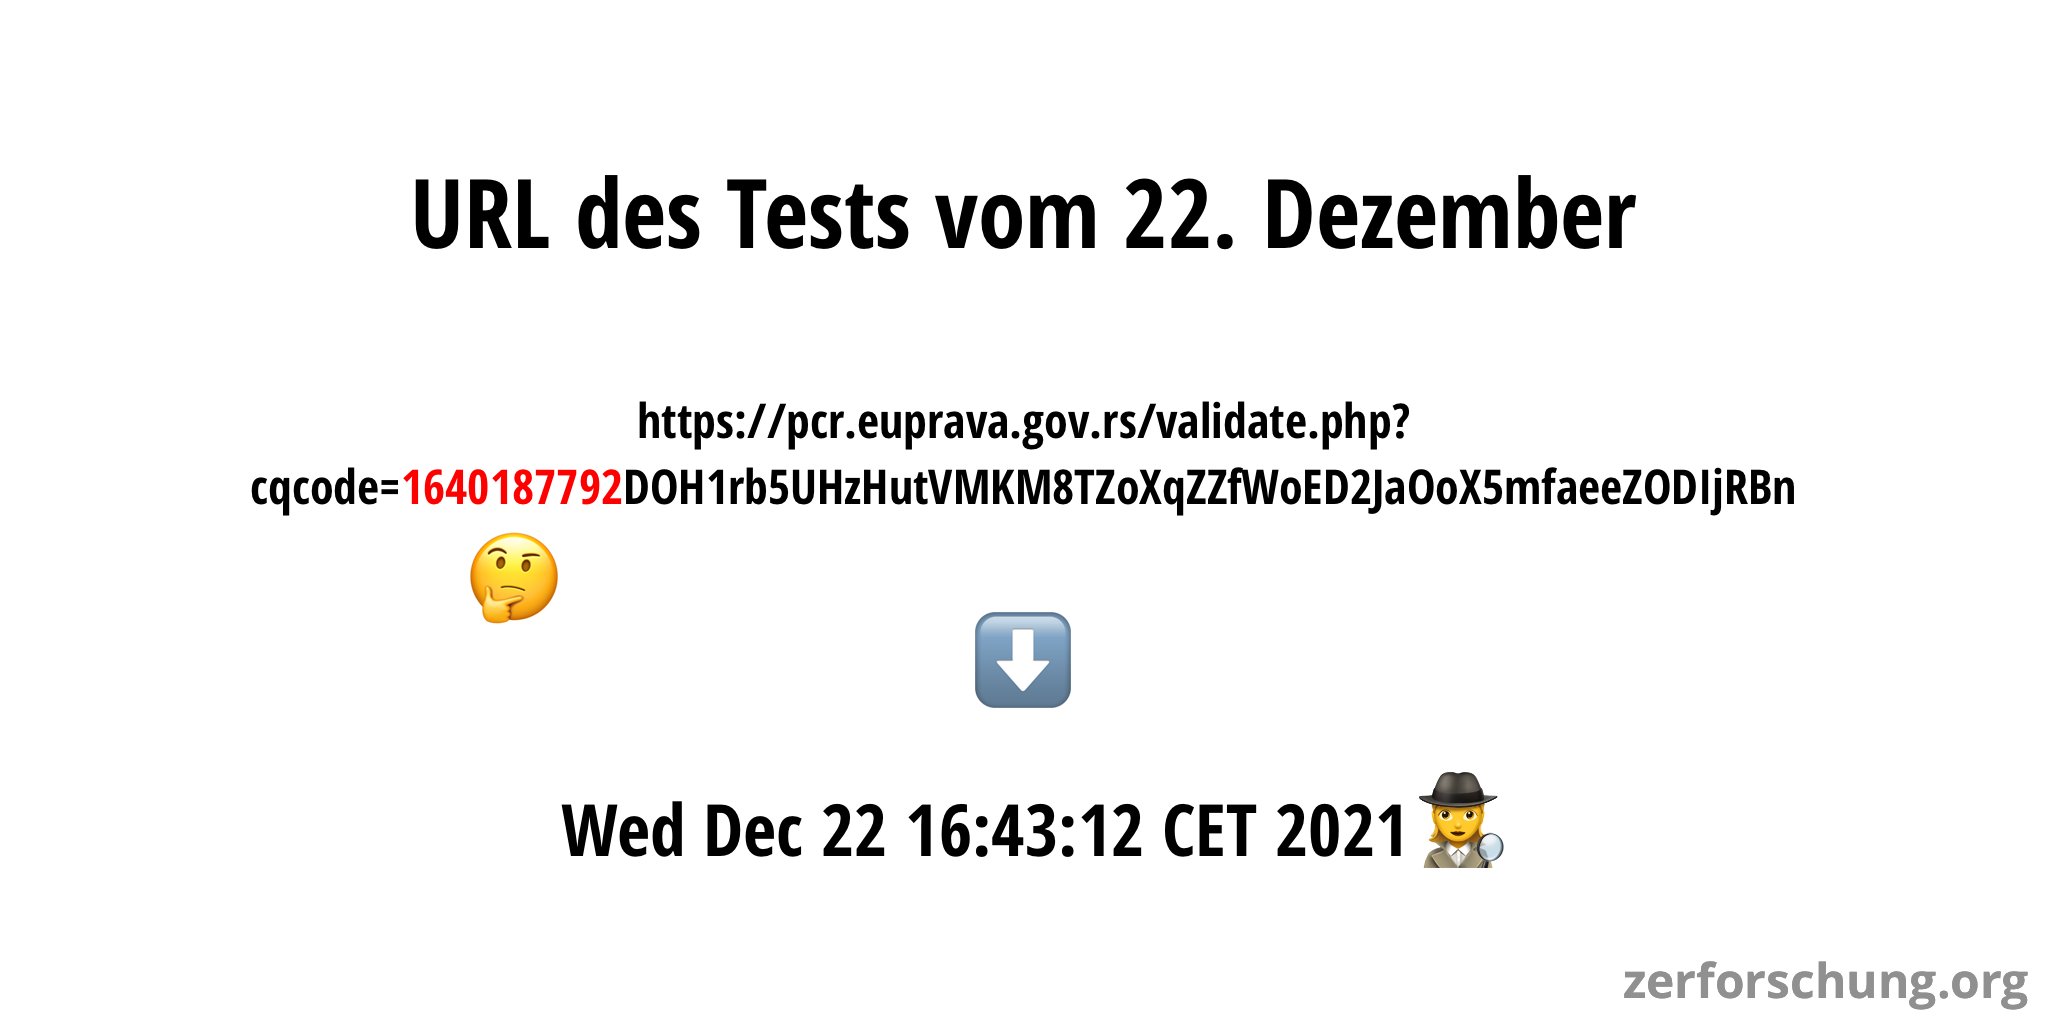 URL zur Verifikations-Website des Tests vom 22. Dezember, mit hervorgehobenem Abschnitt des Timestamps sowie die lesbare Repräsentation: Mittwoch, 22. Dezember 2021 16:43:12 CET